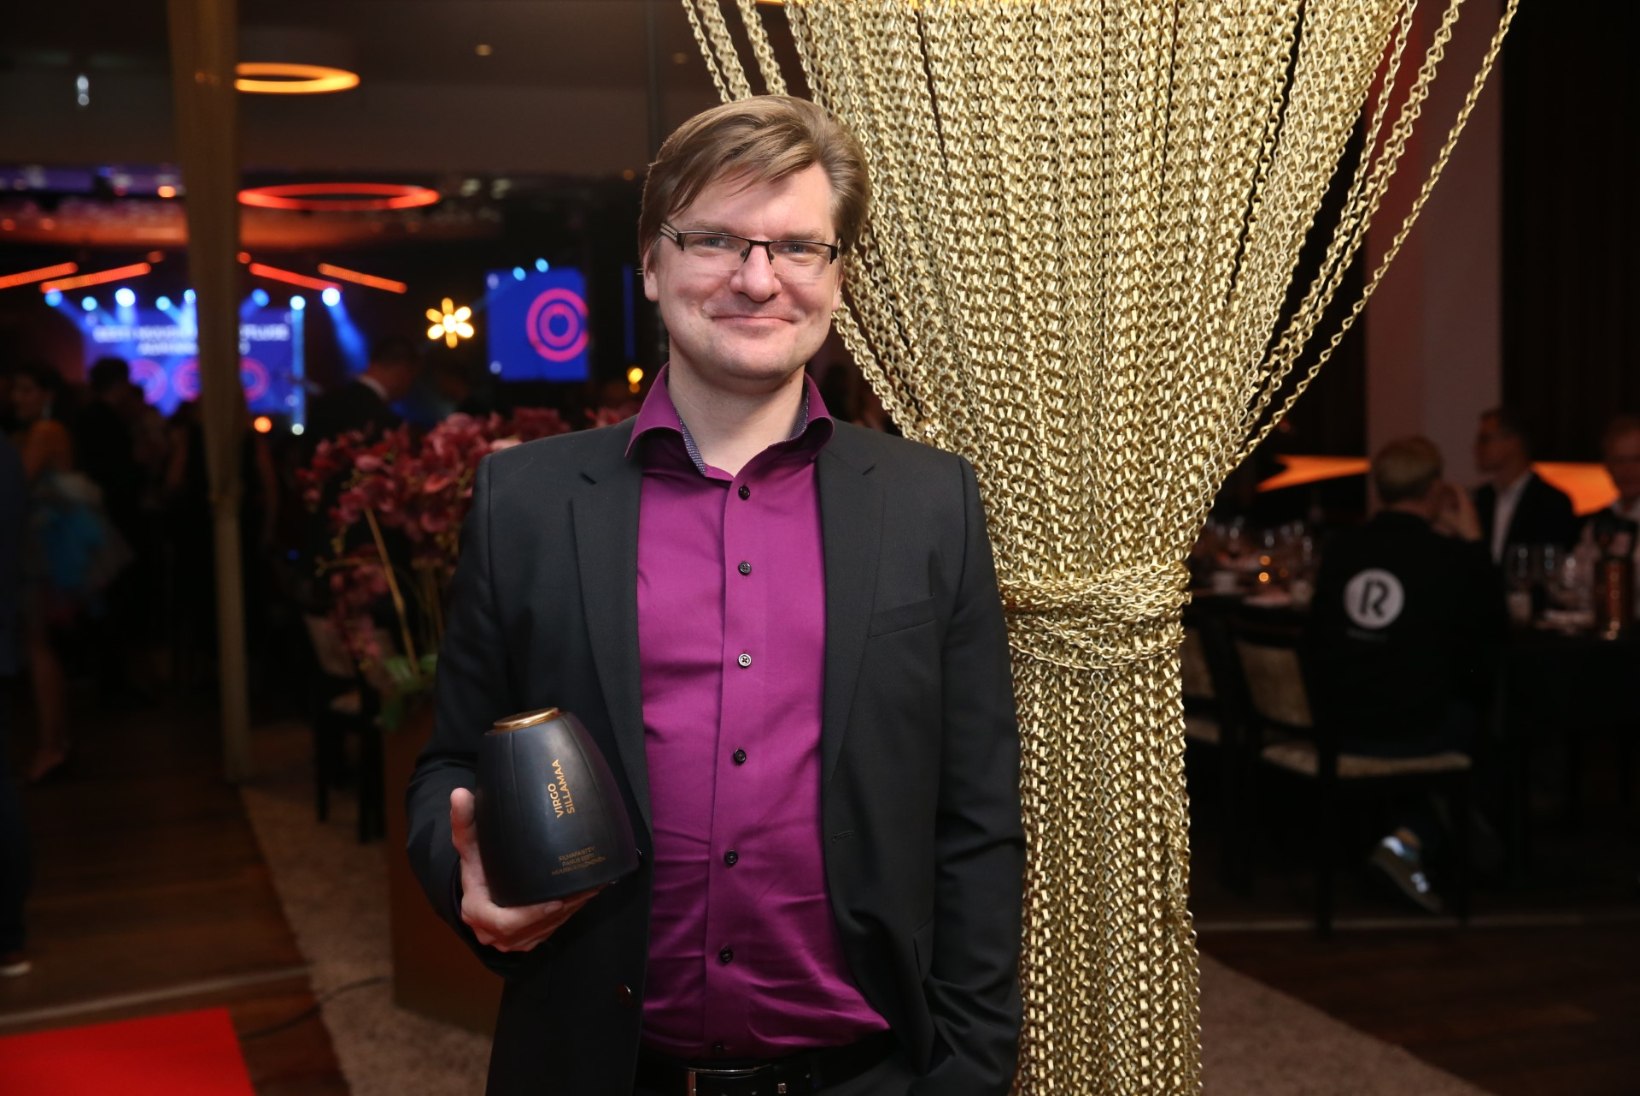 GALERII | Selgusid Eesti muusikaettevõtluse auhinnad 2020 võitjad!